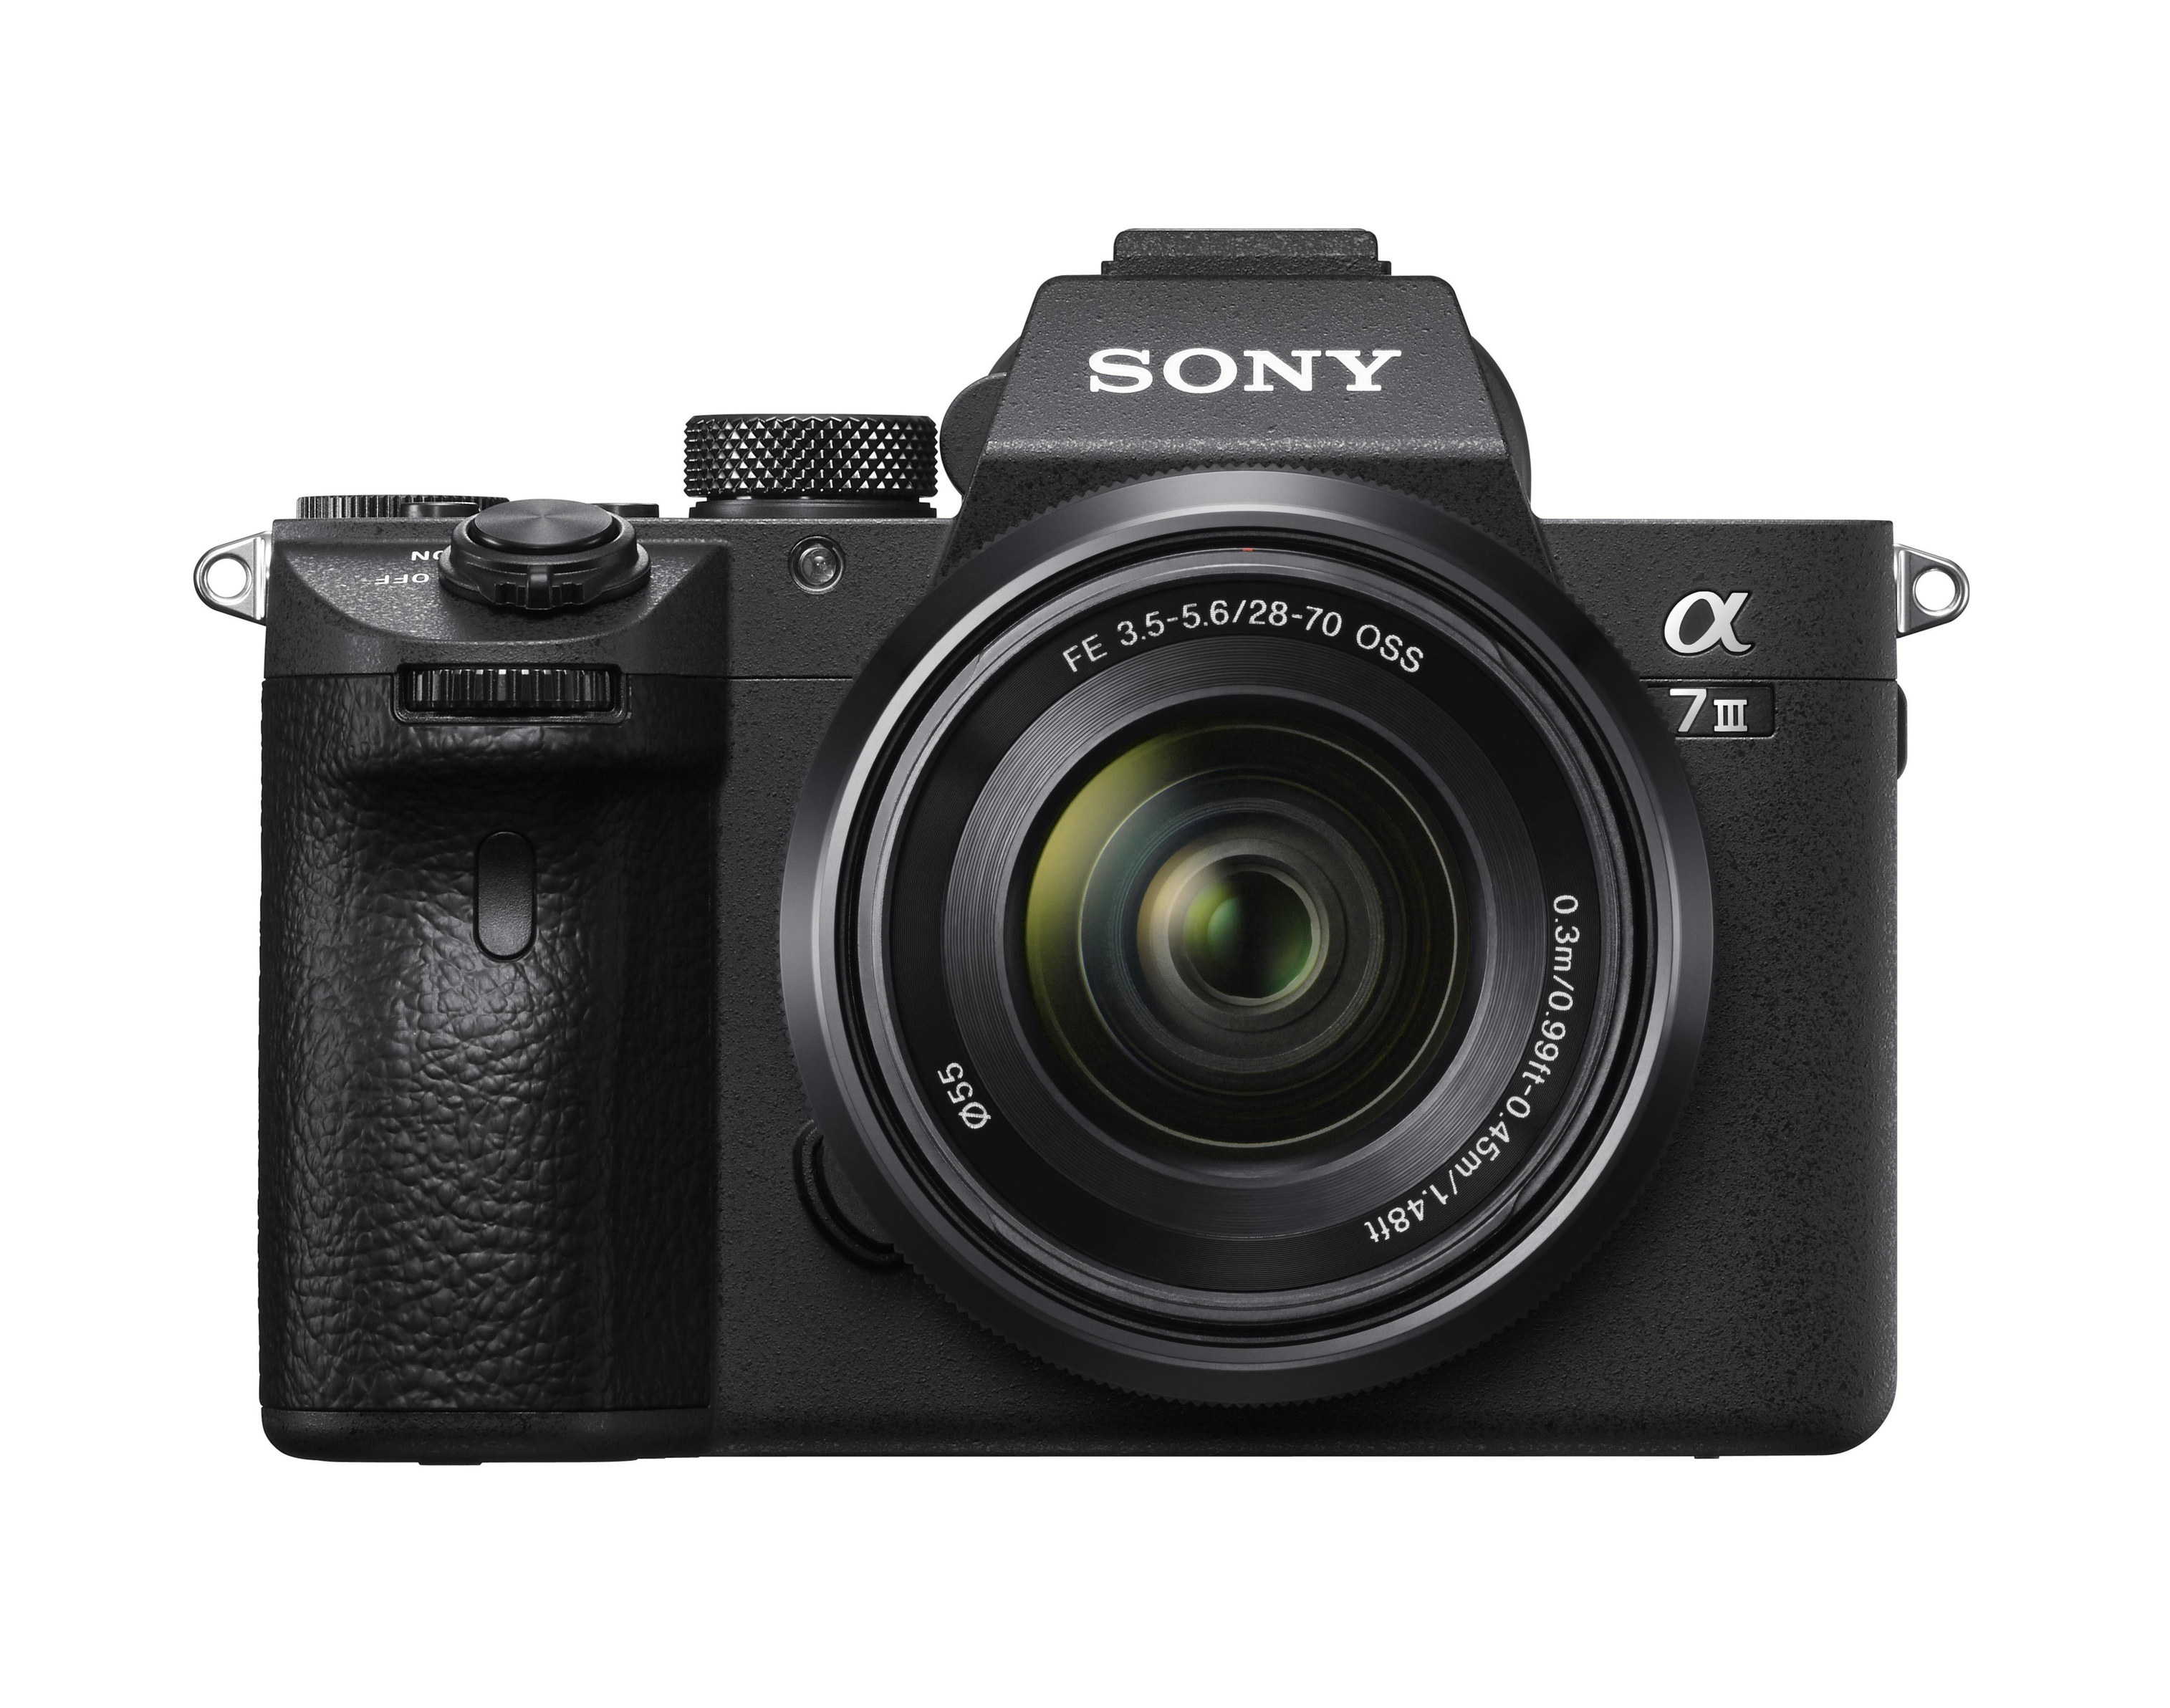 SONY Alpha 7 M3 KIT (ILCE-7M3K) + Tasche + Speicherkarte Systemkamera mit Objektiv 28-70 mm, 7,6 cm Display Touchscreen, WLAN für 1829€ in Media Markt